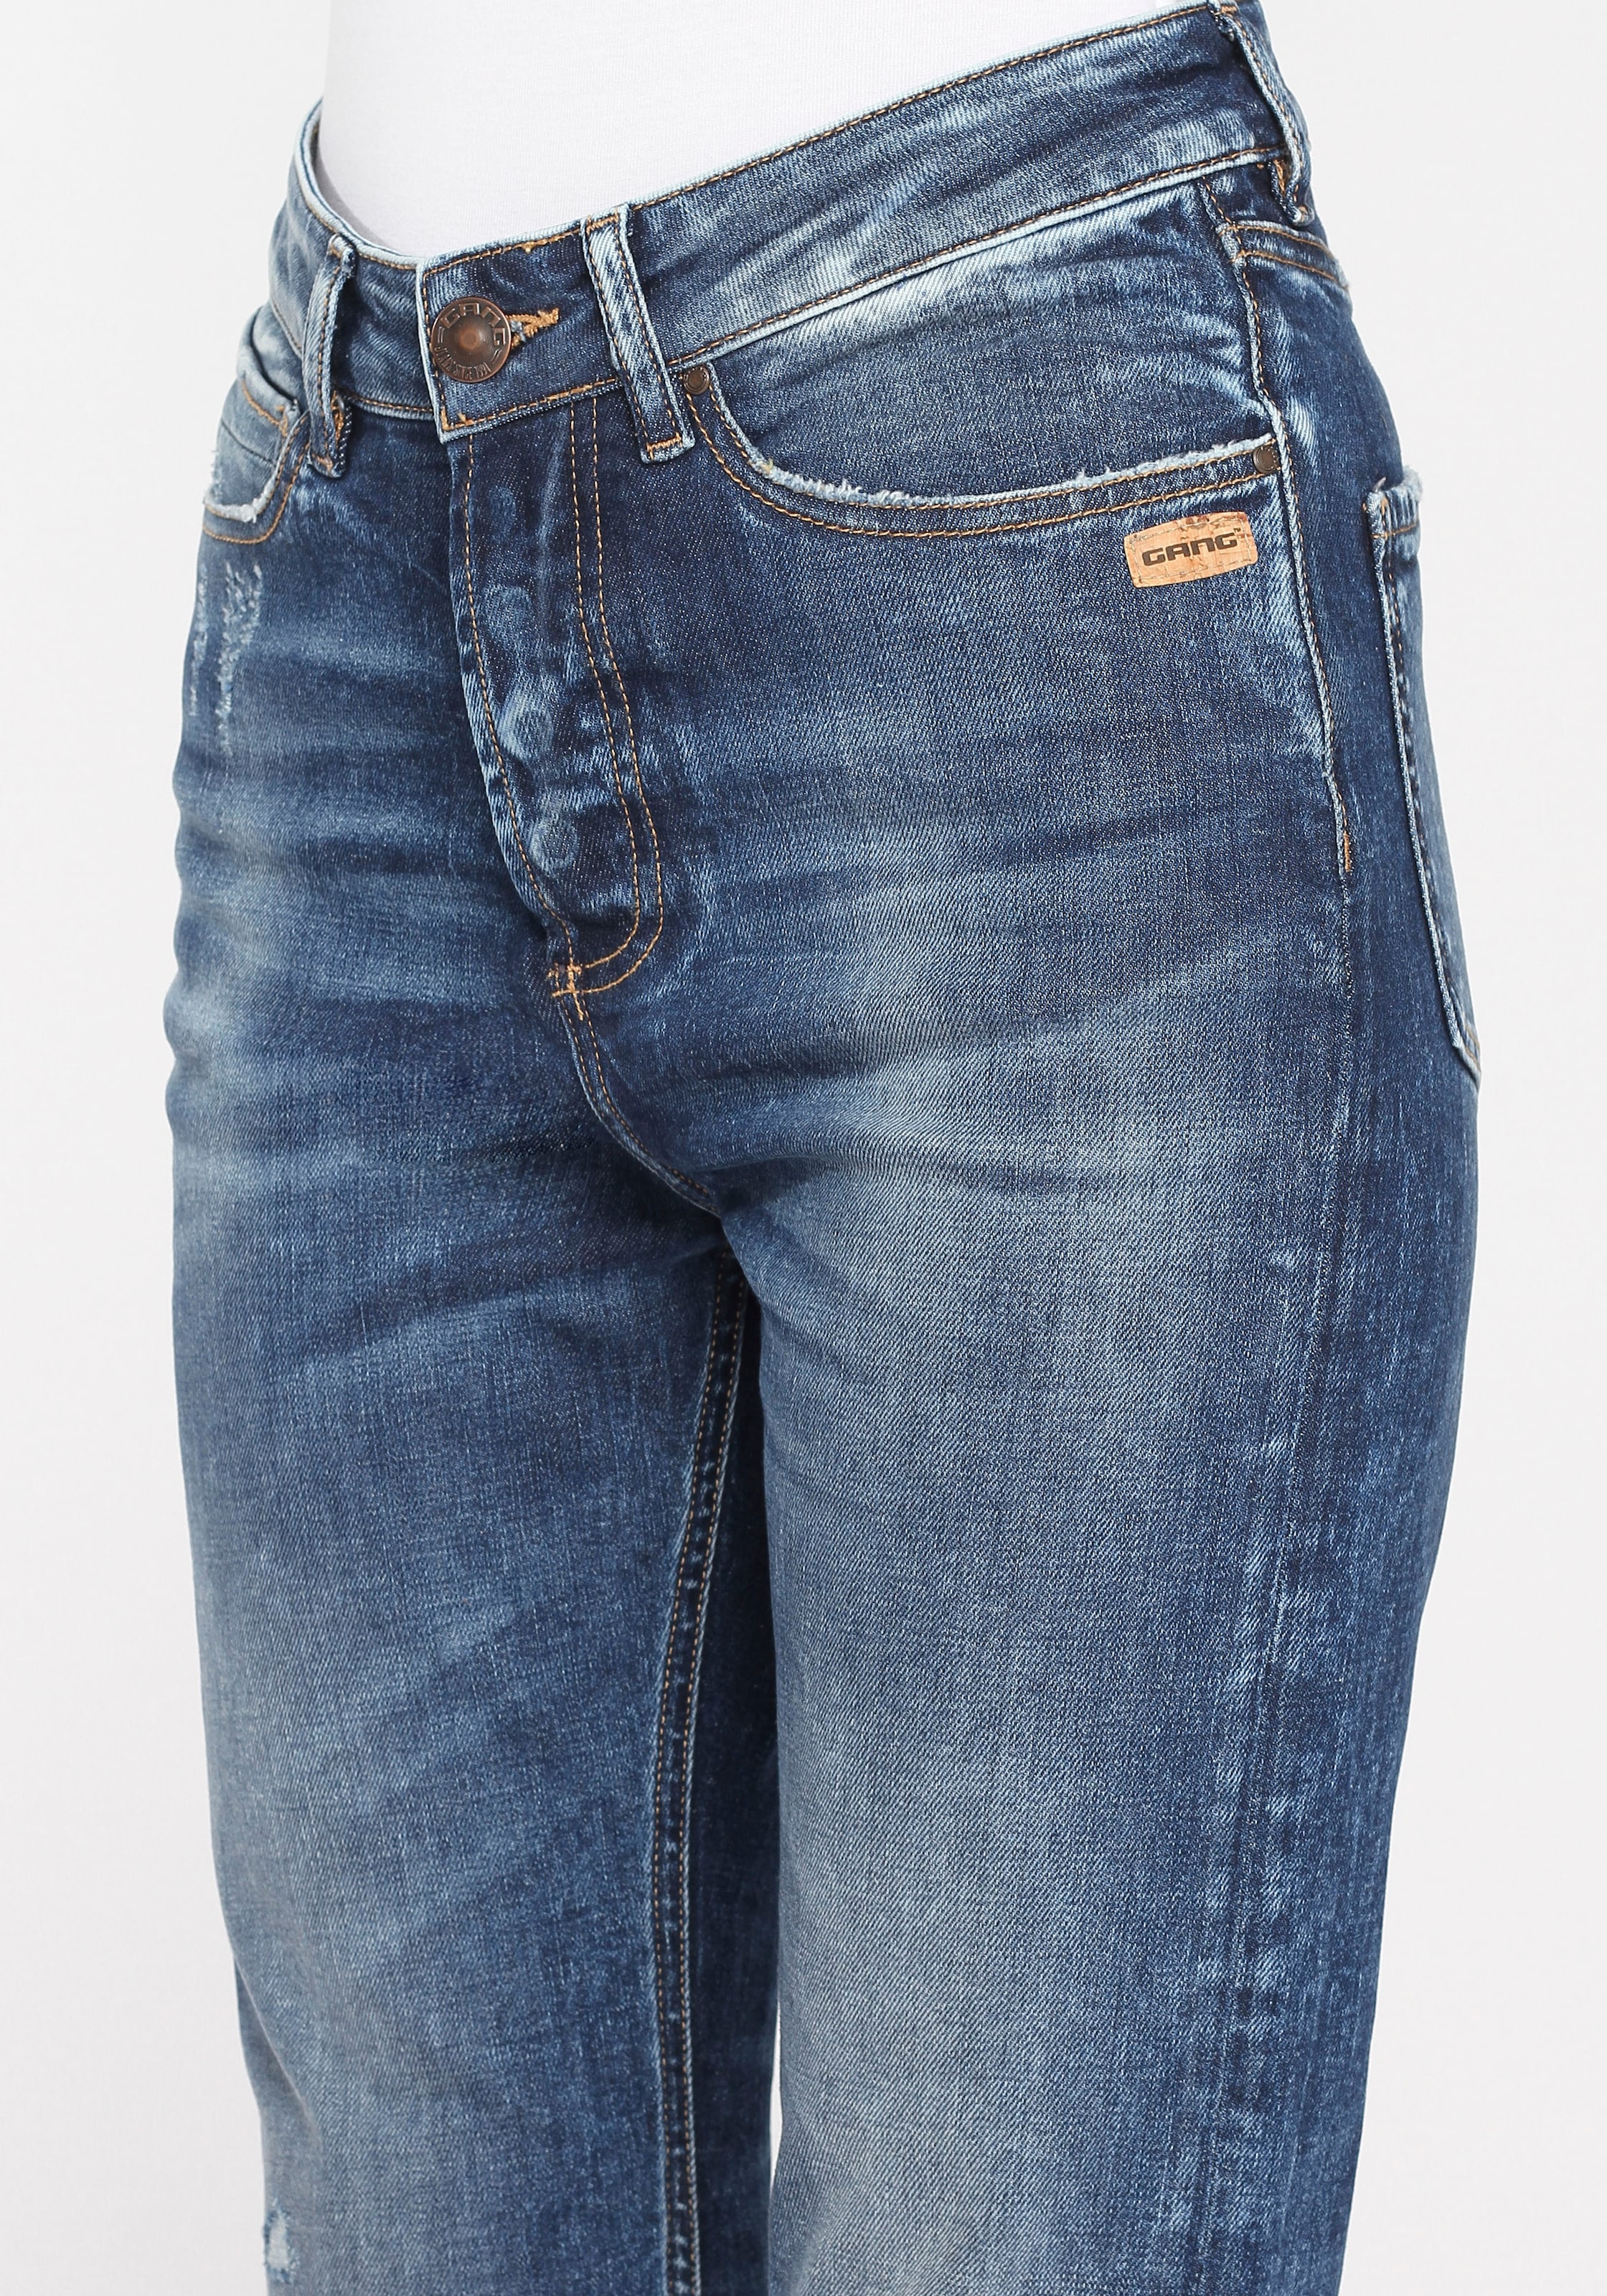 GANG Mom-Jeans »94JULY«, mit Destroyed-Effekten bei OTTOversand